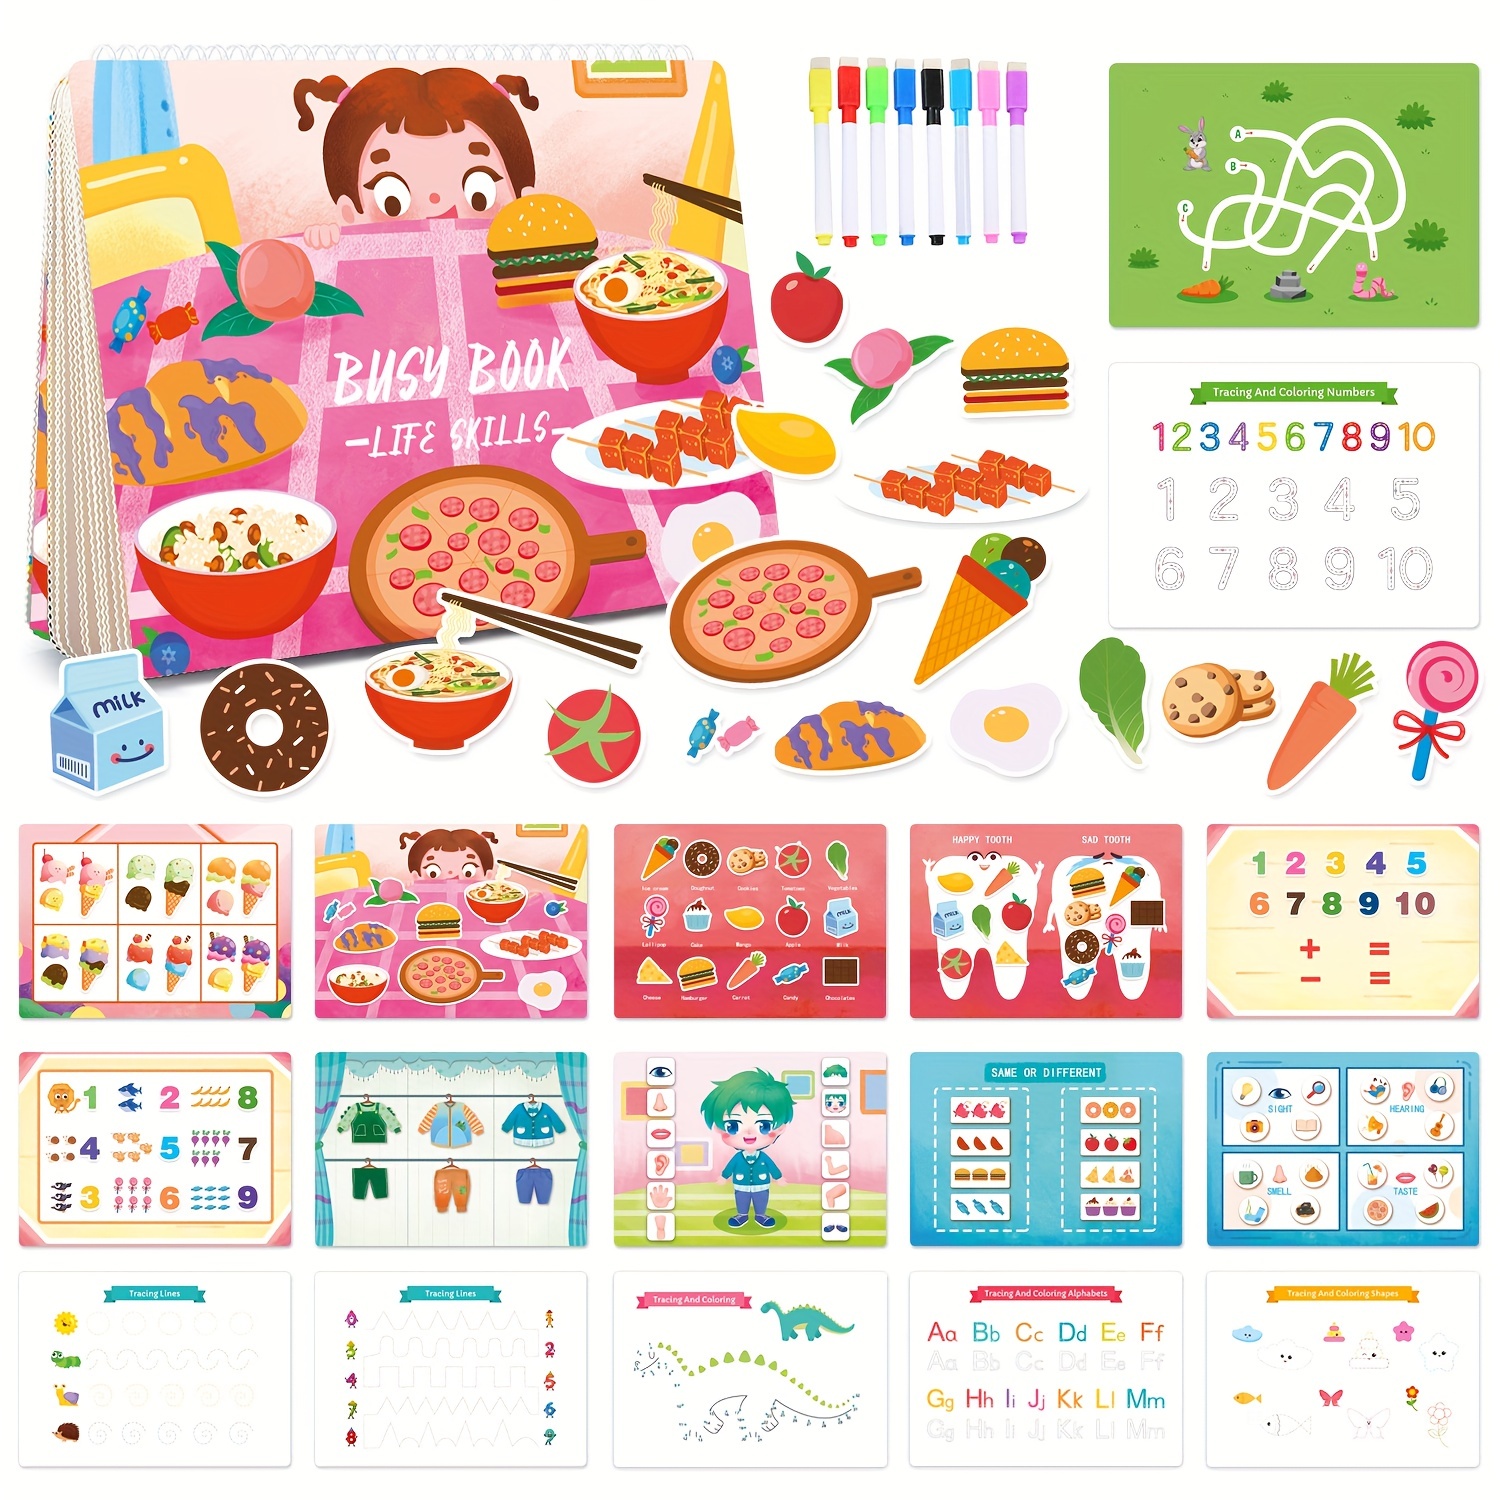 YiYeraio Libro ocupado para niños pequeños – Montessori Toys Libro ocupado  para niños pequeños a partir de 3 años, materiales de aprendizaje